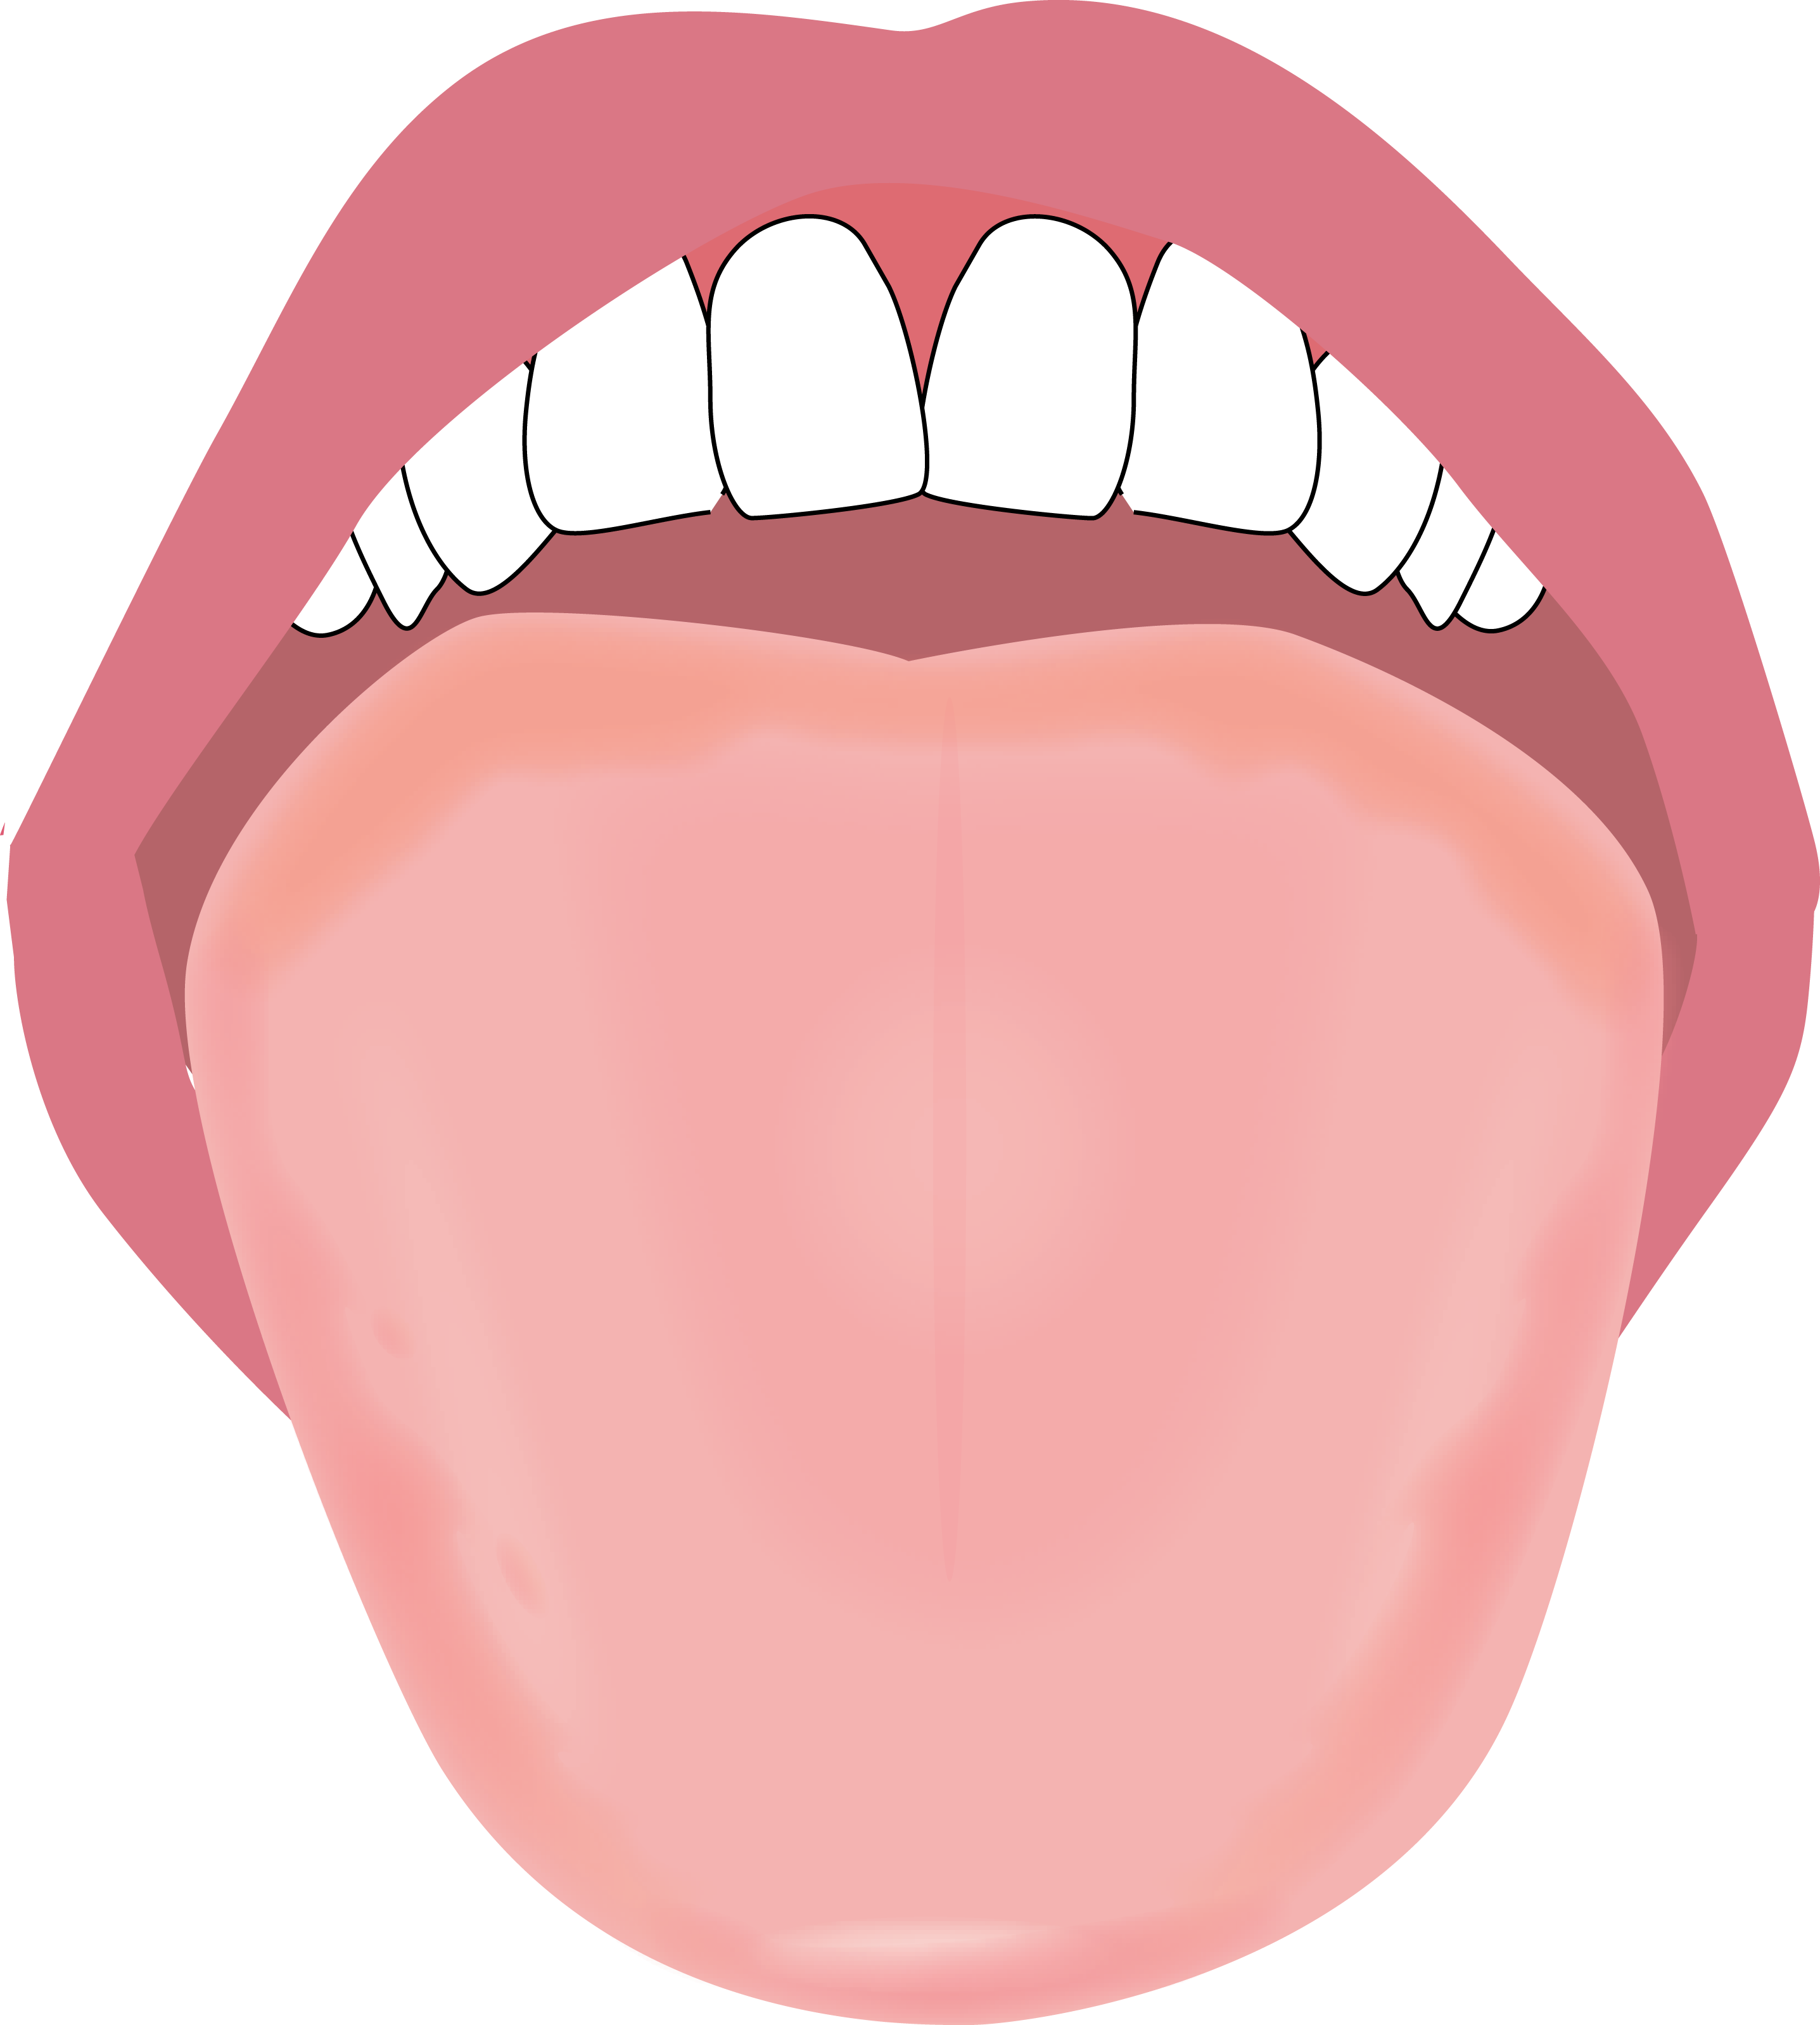 舌のイラスト描きました やましろ歯科口腔外科 口腔外科 口腔内科 福岡で親知らずの抜歯 ドライマウス 睡眠時無呼吸症候群 口腔がん 健診のことならやましろ歯科口腔外科へ 日本口腔外科学会認定専門医が治療します